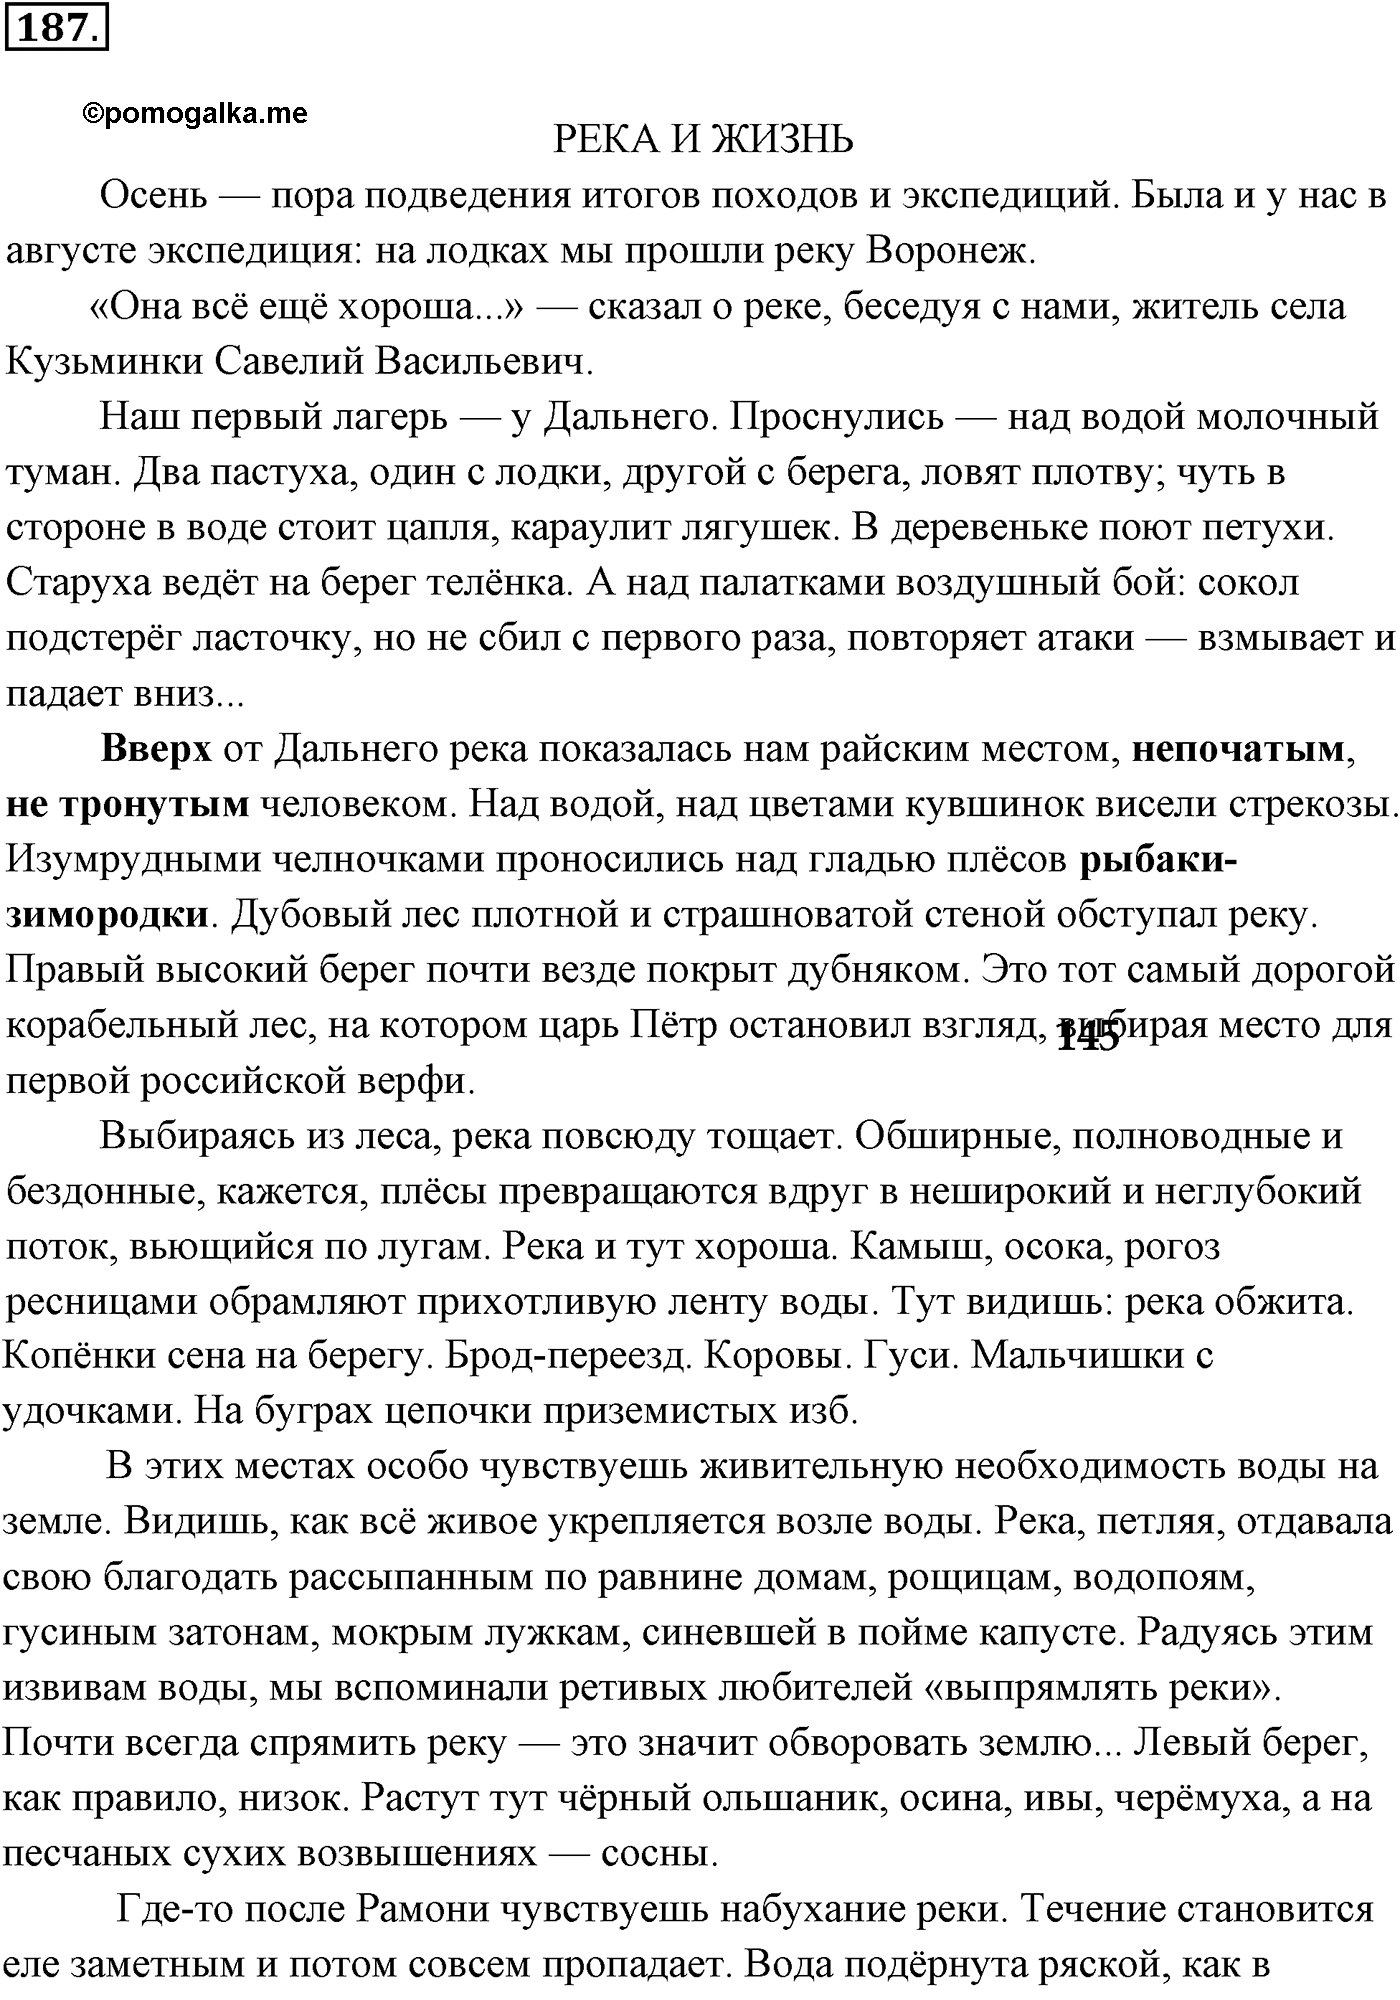 страница 132 номер 187 русский язык 9 класс Разумовская 2011 год